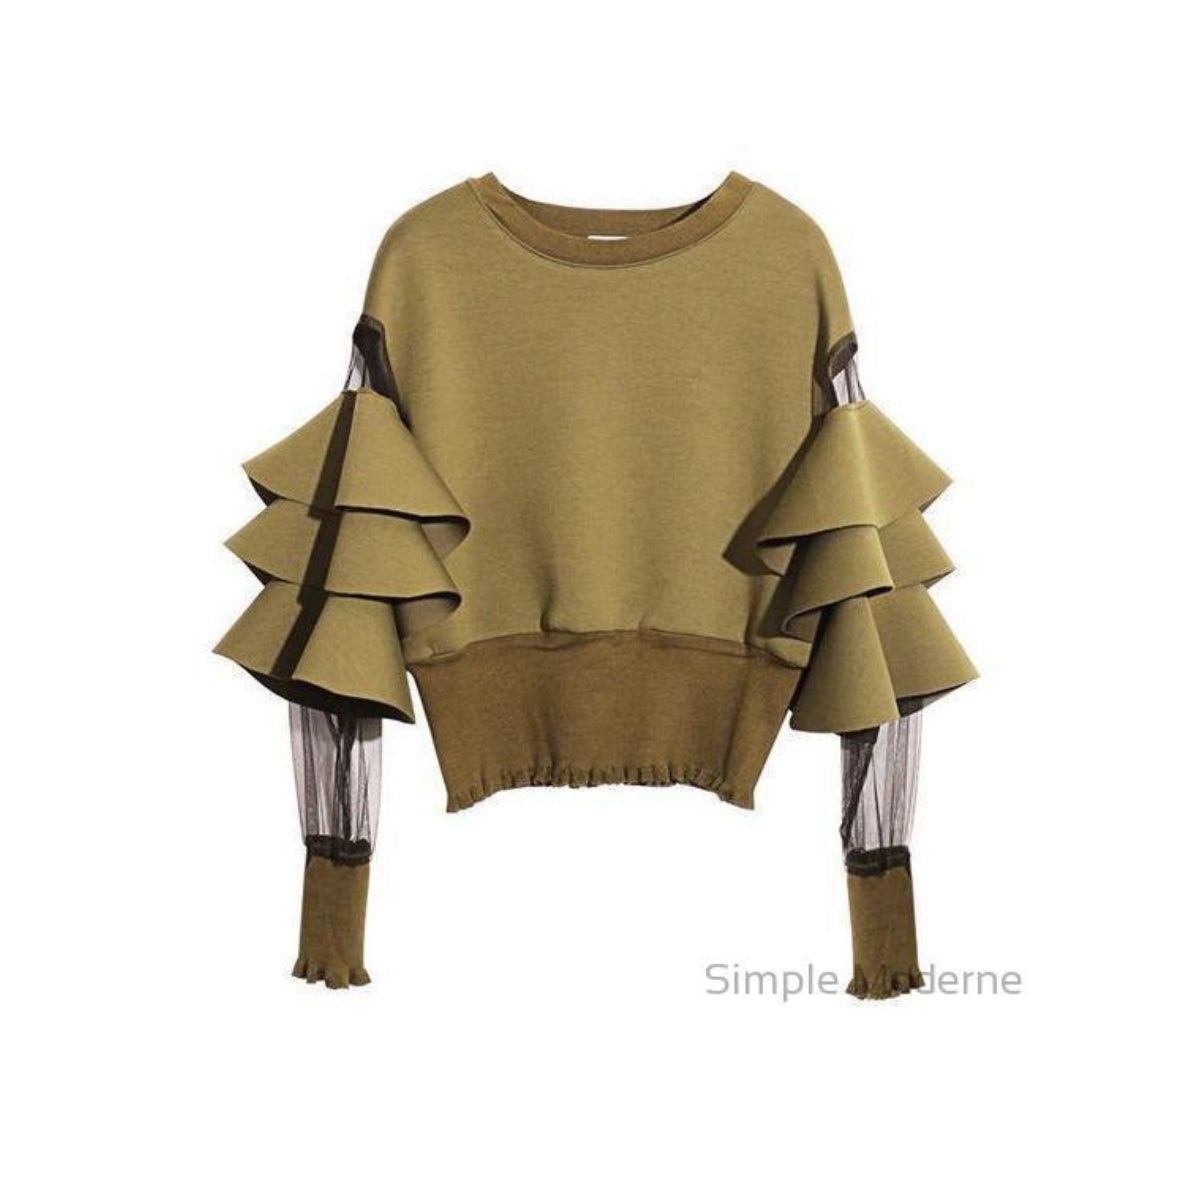 Simple Moderne Exclusive Sweatshirt-SimpleModerne